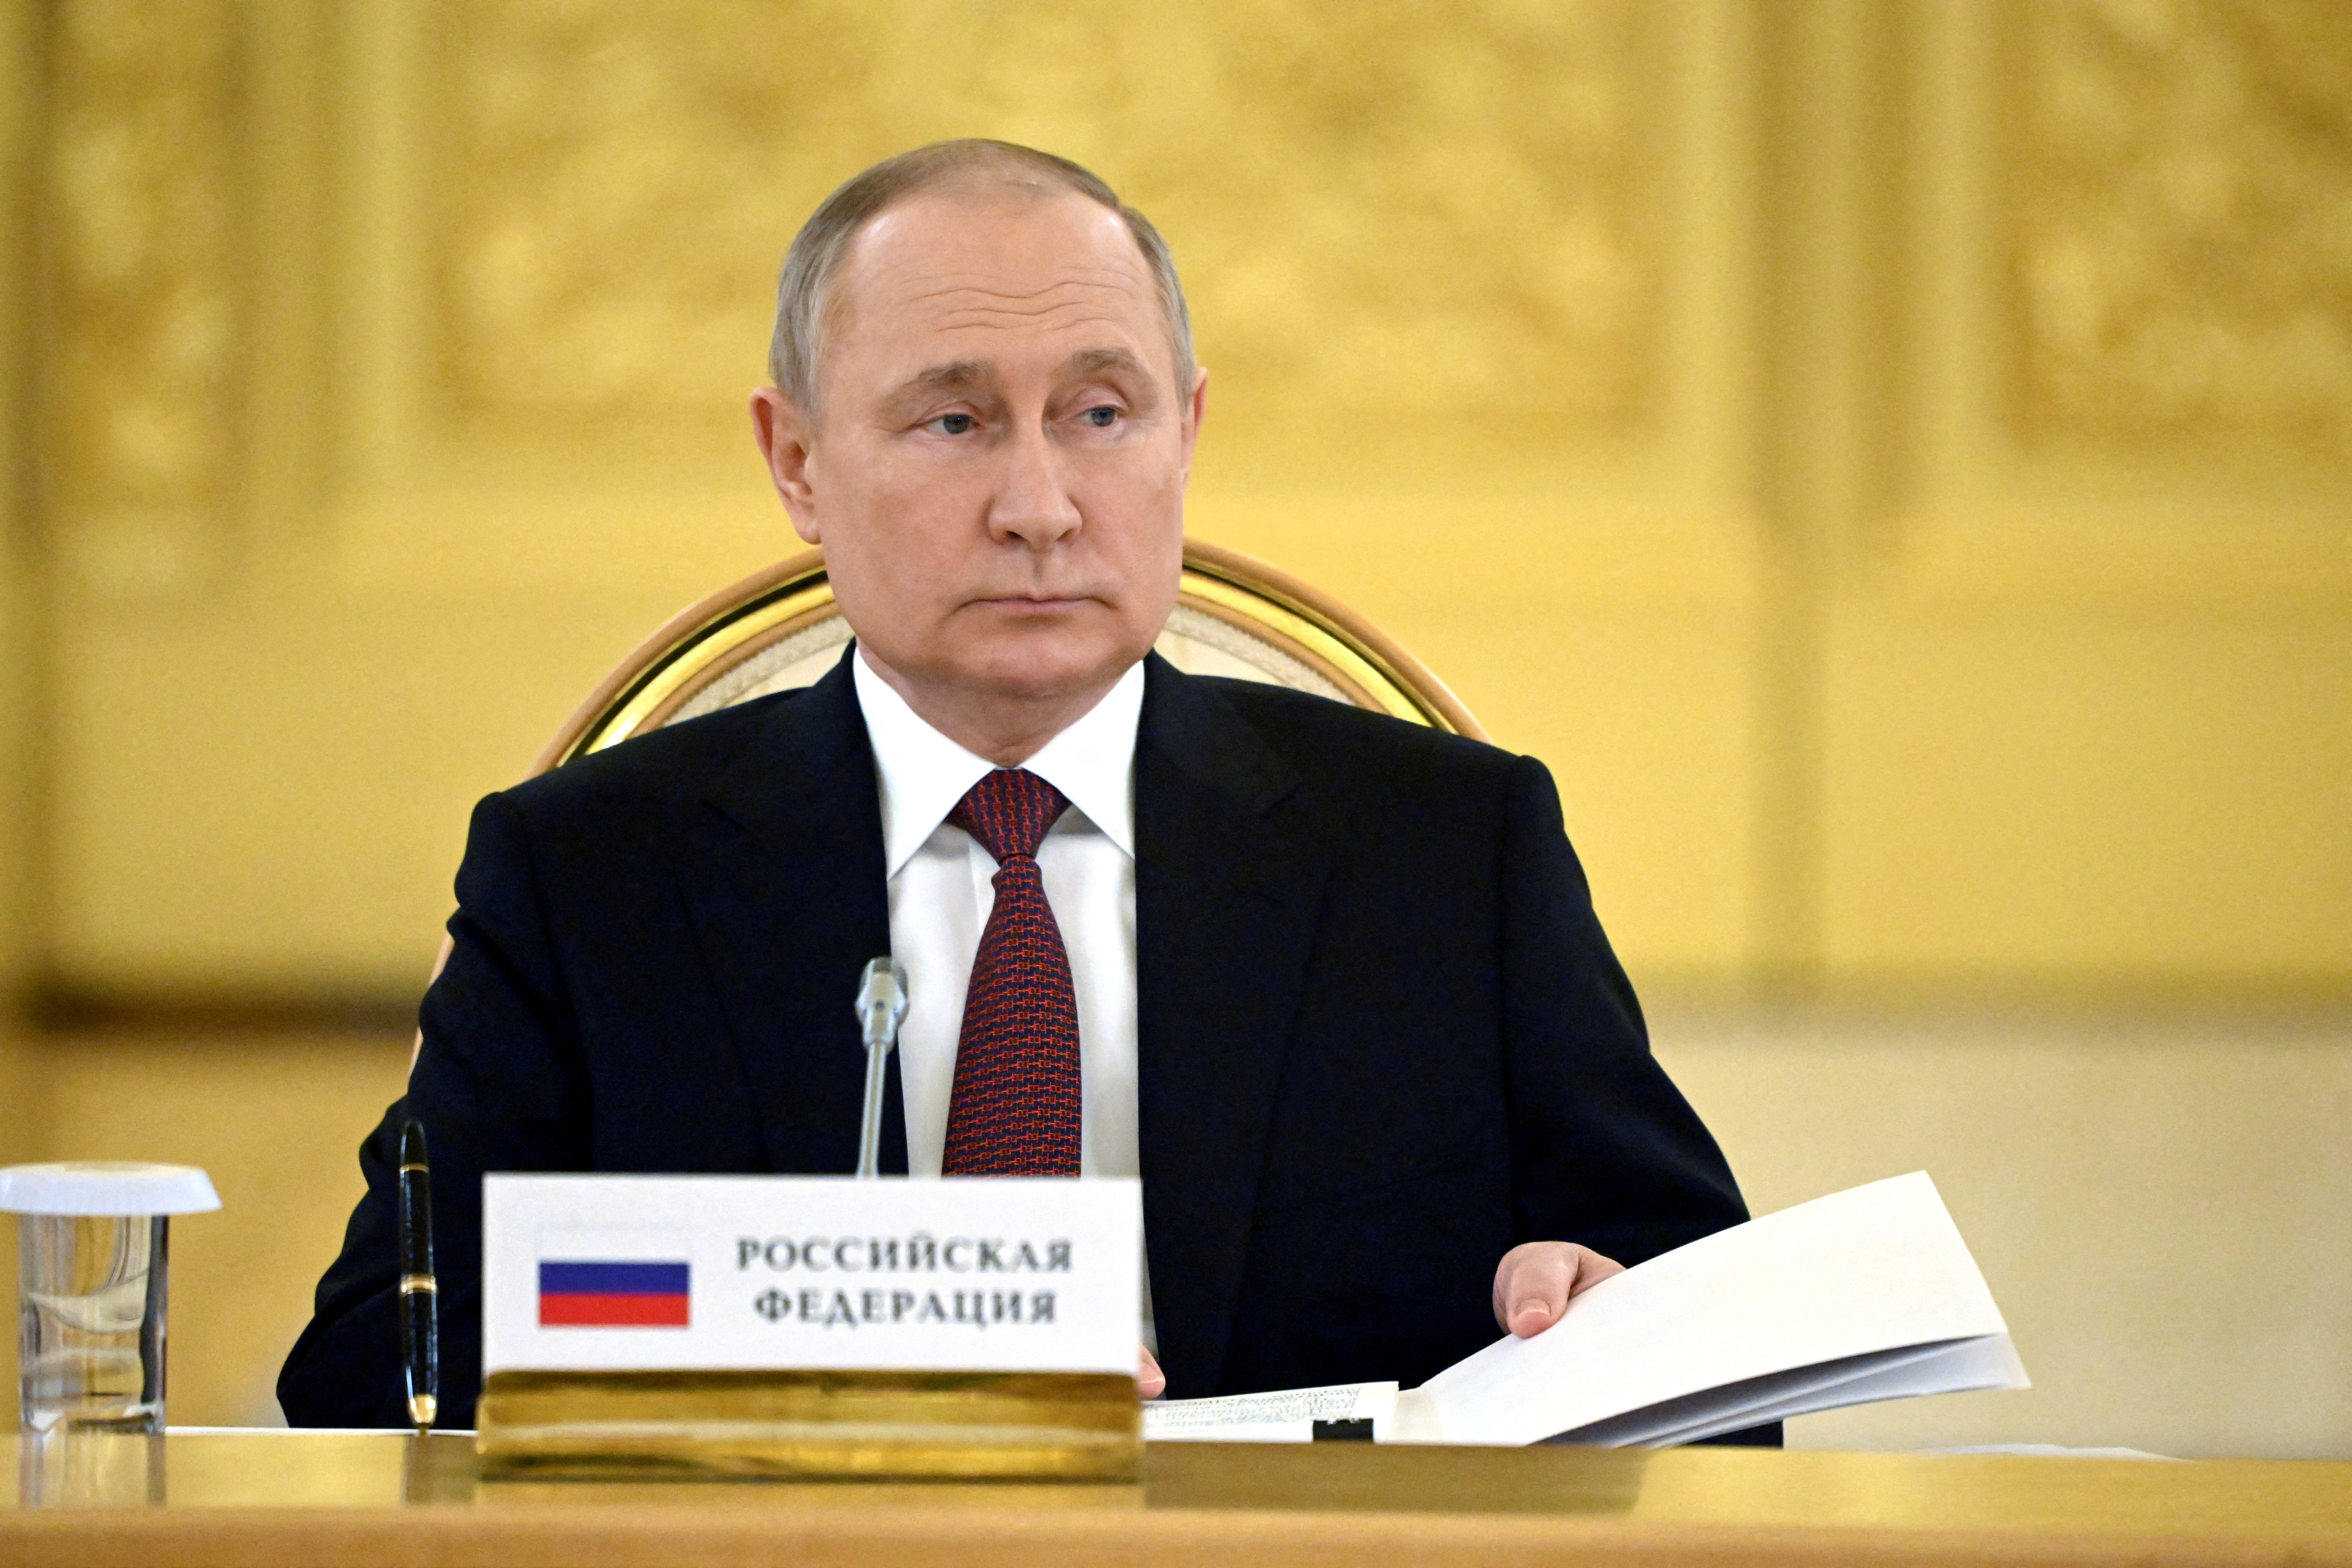 Πρώην πράκτορας KGB: Ο Πούτιν έχει ήδη χάσει τον πόλεμο, αλλά είναι ικανός για τα χειρότερα